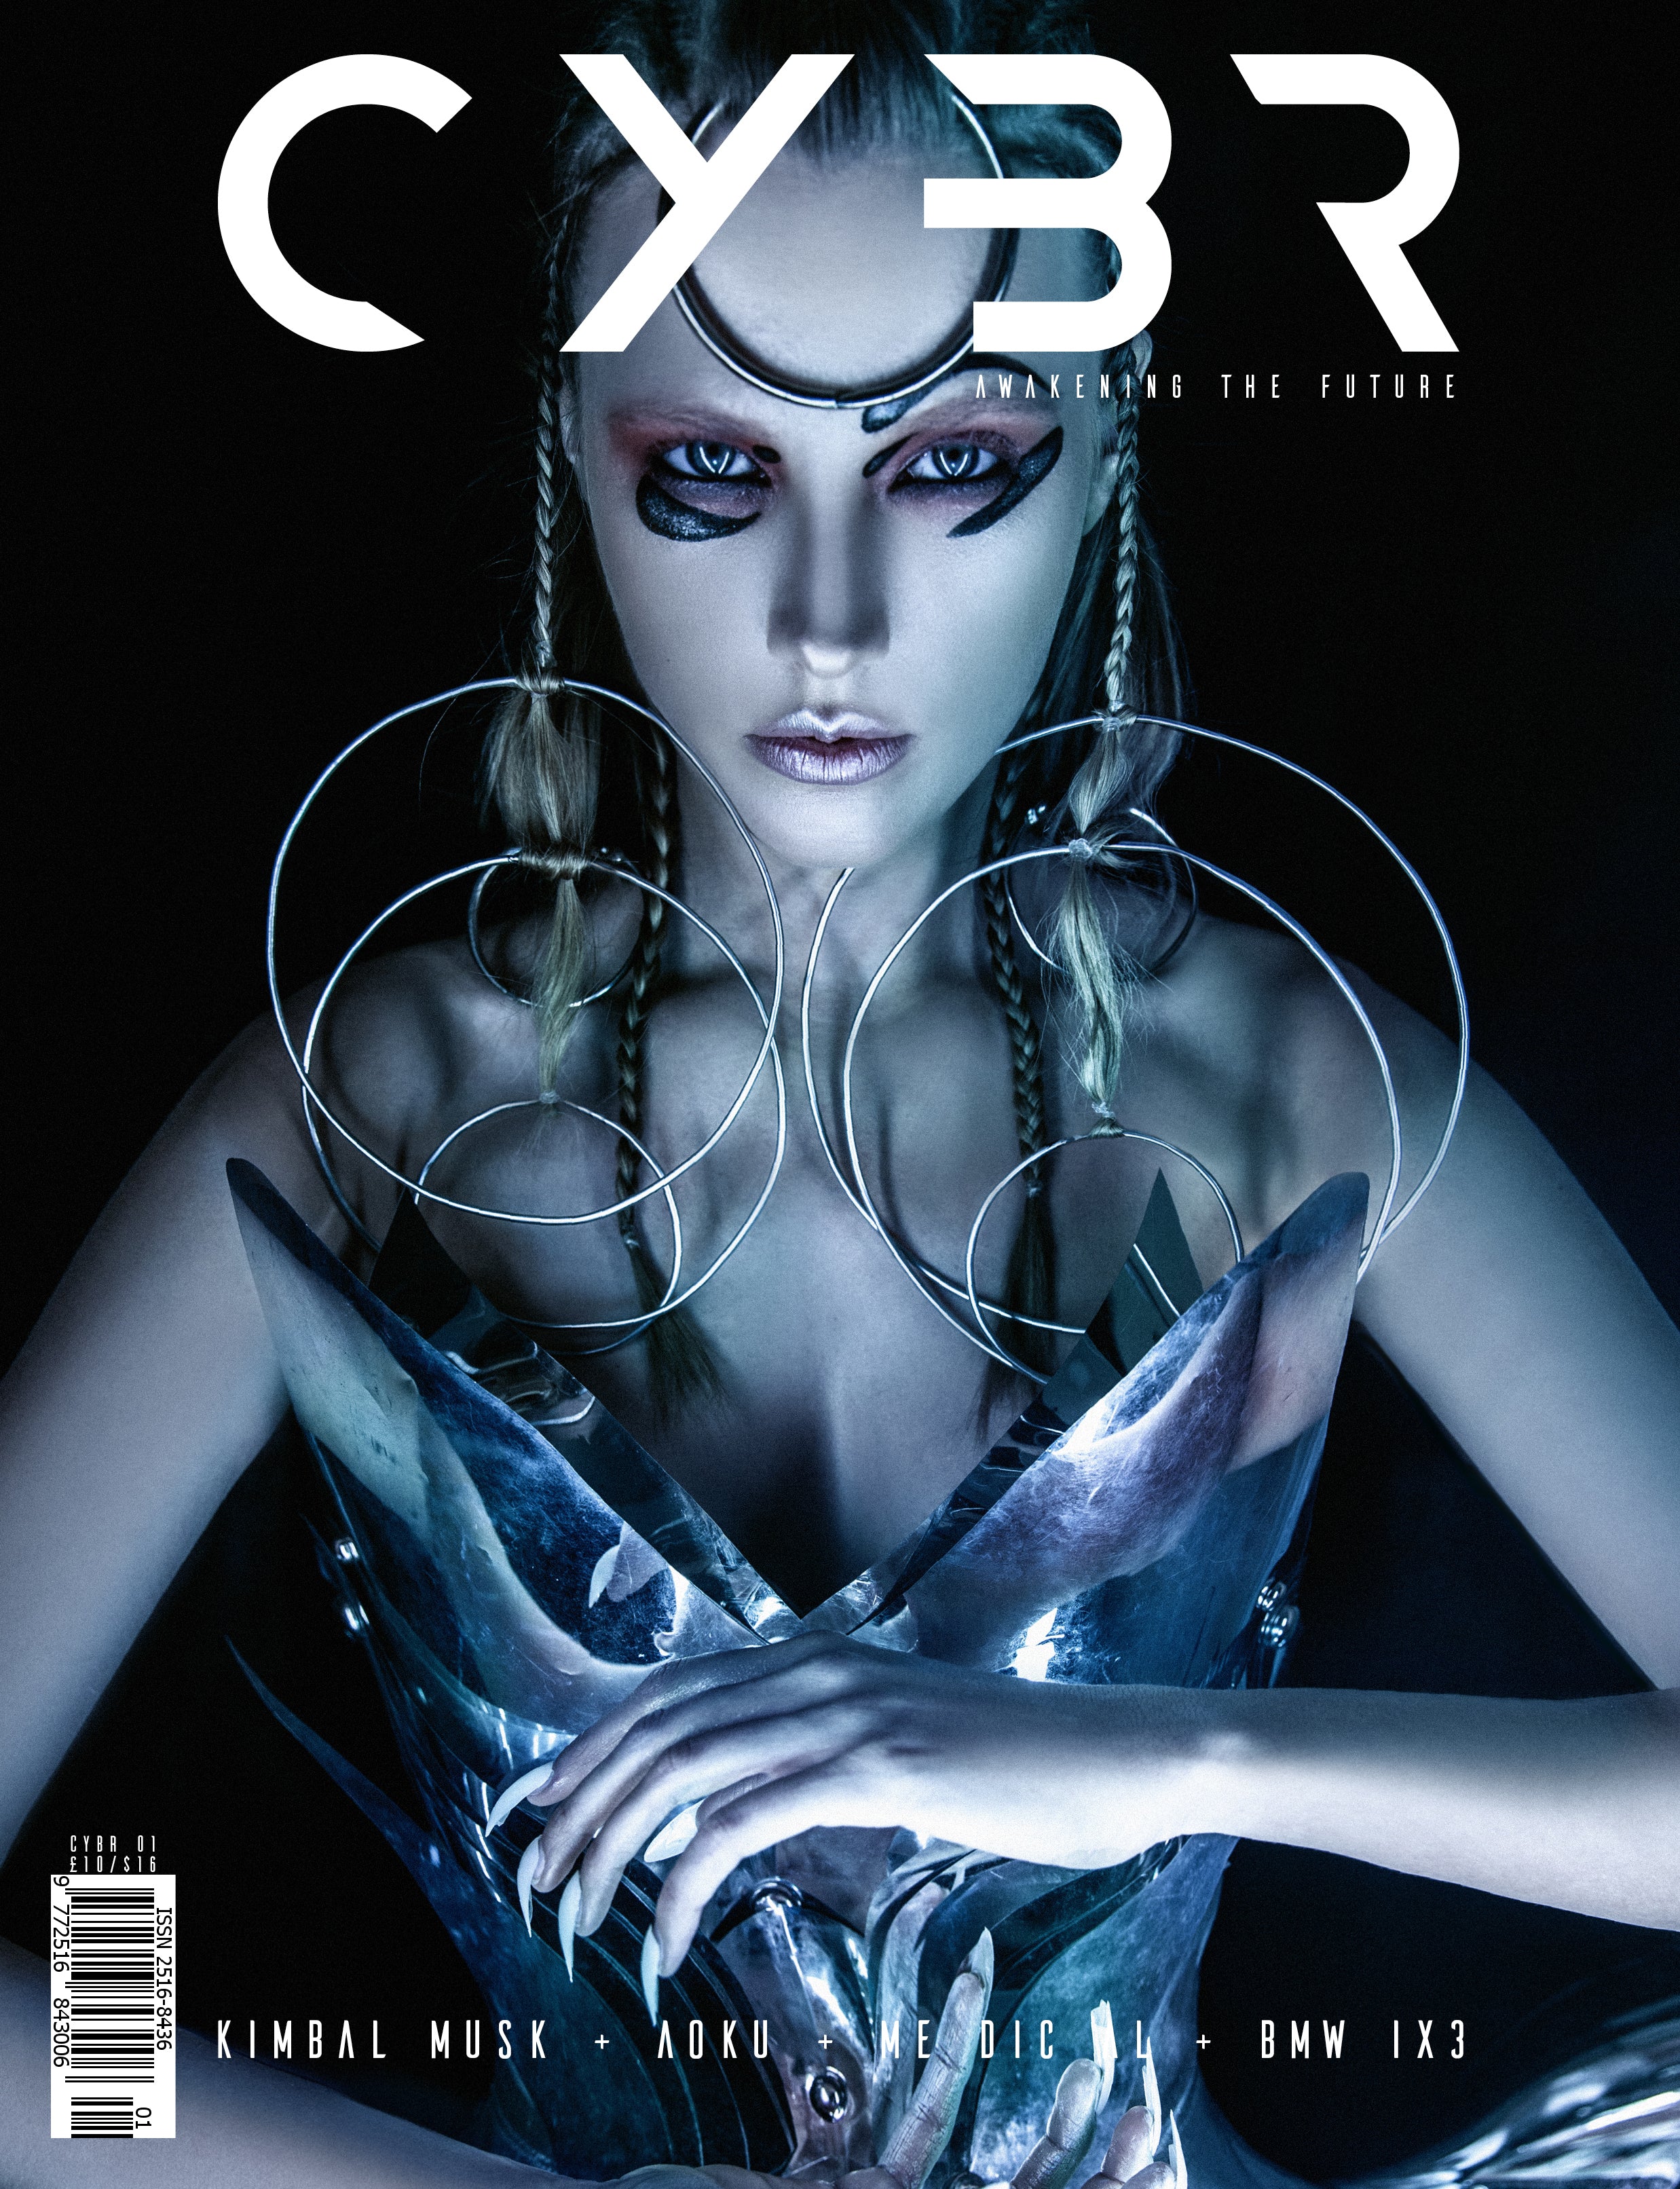 CYBR Magazine Issue 01 DIGITAL